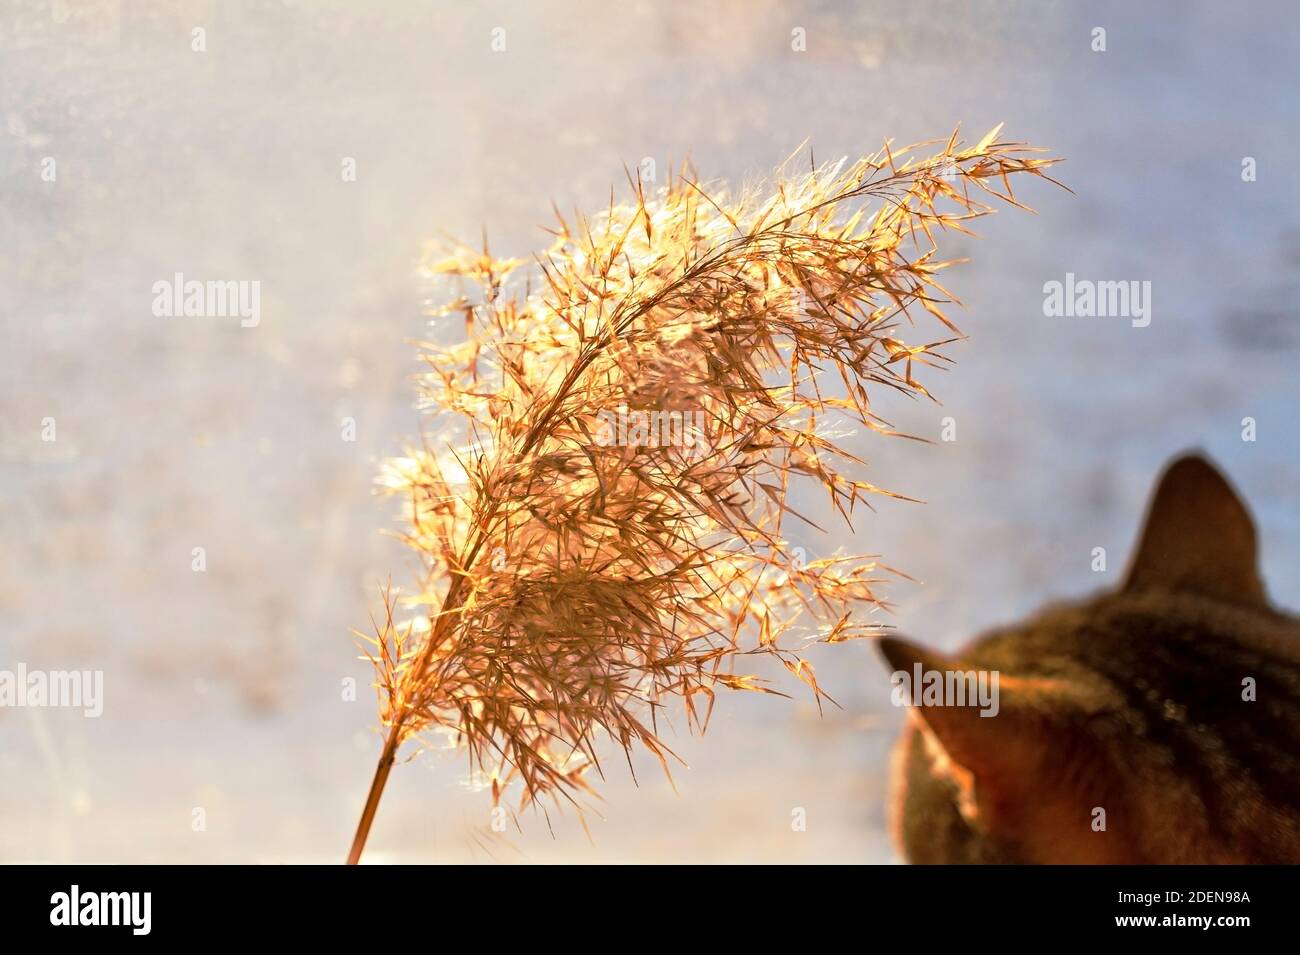 Makrele tabby Katze Blick auf trockene flauschige Schilfzweig in sonnigen Tag, selektive Fokus, Abstrakt natürlichen Hintergrund. Phragmites australis, Pampagras Stockfoto